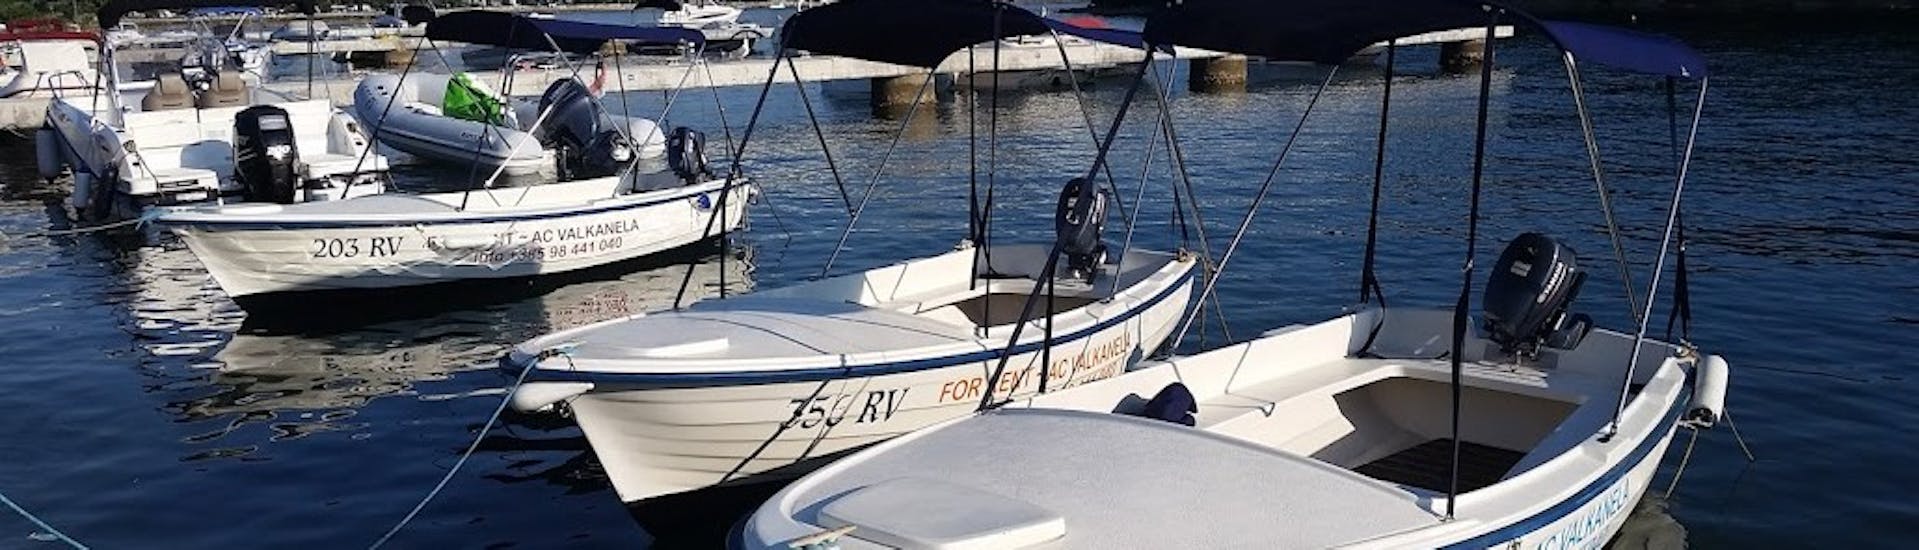 Bootfoto van Vrsar bootverhuur (tot 6 personen) met Lux Rent A Boat & Jet Ski Vrsar.